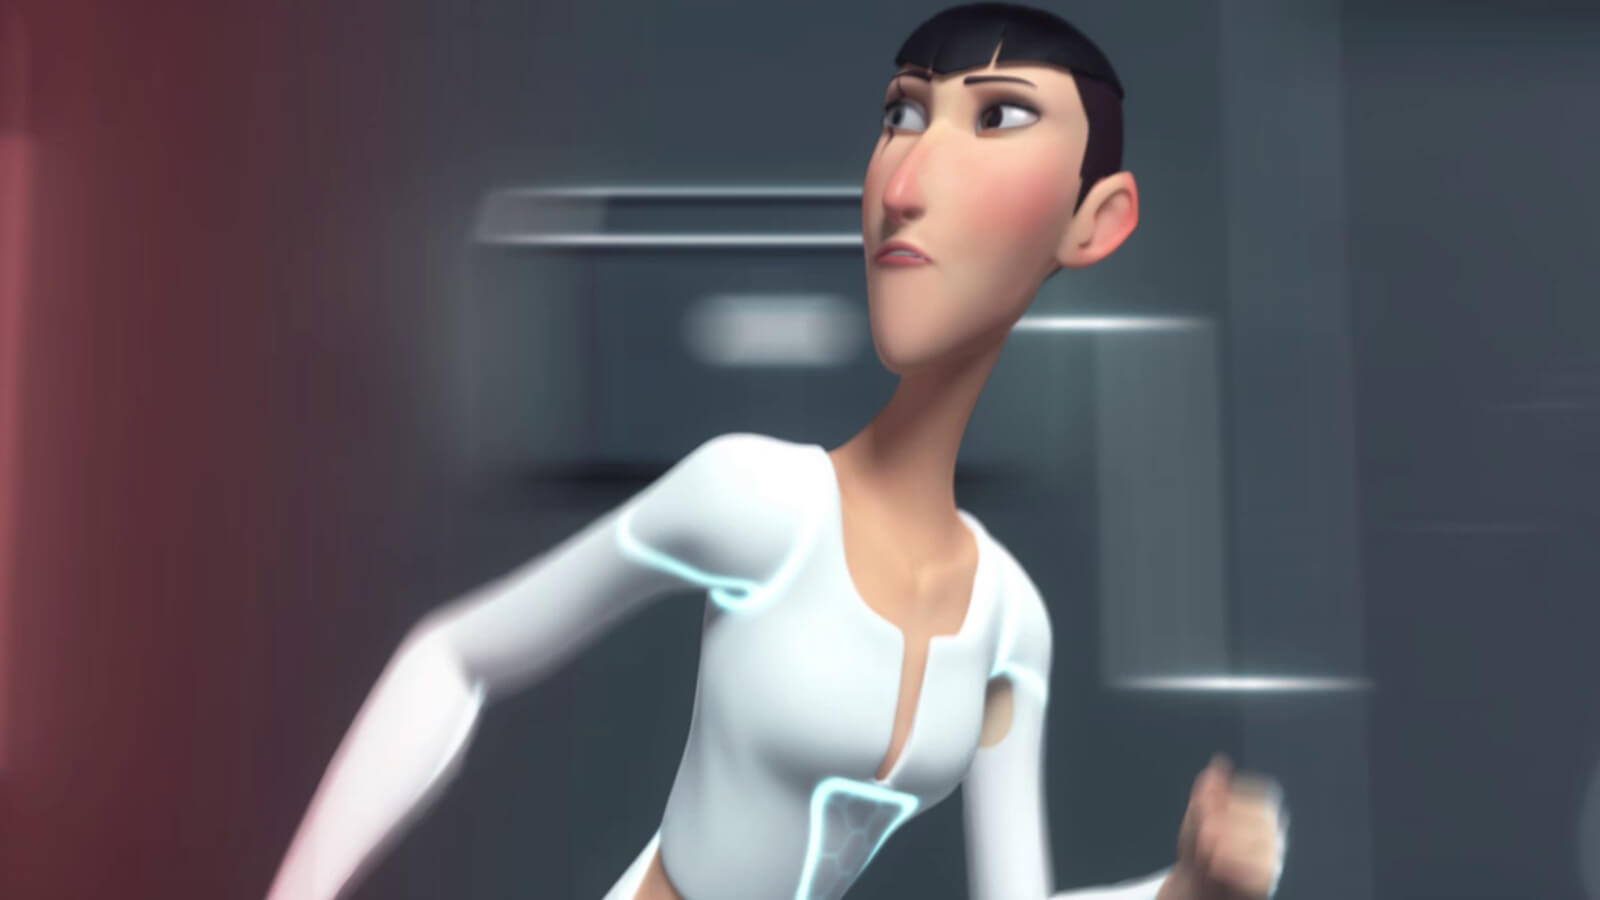 Una mujer alta y delgada con una cicatriz en el ojo con ropa blanca futurista se escapa, mirando detrás de su hombro.